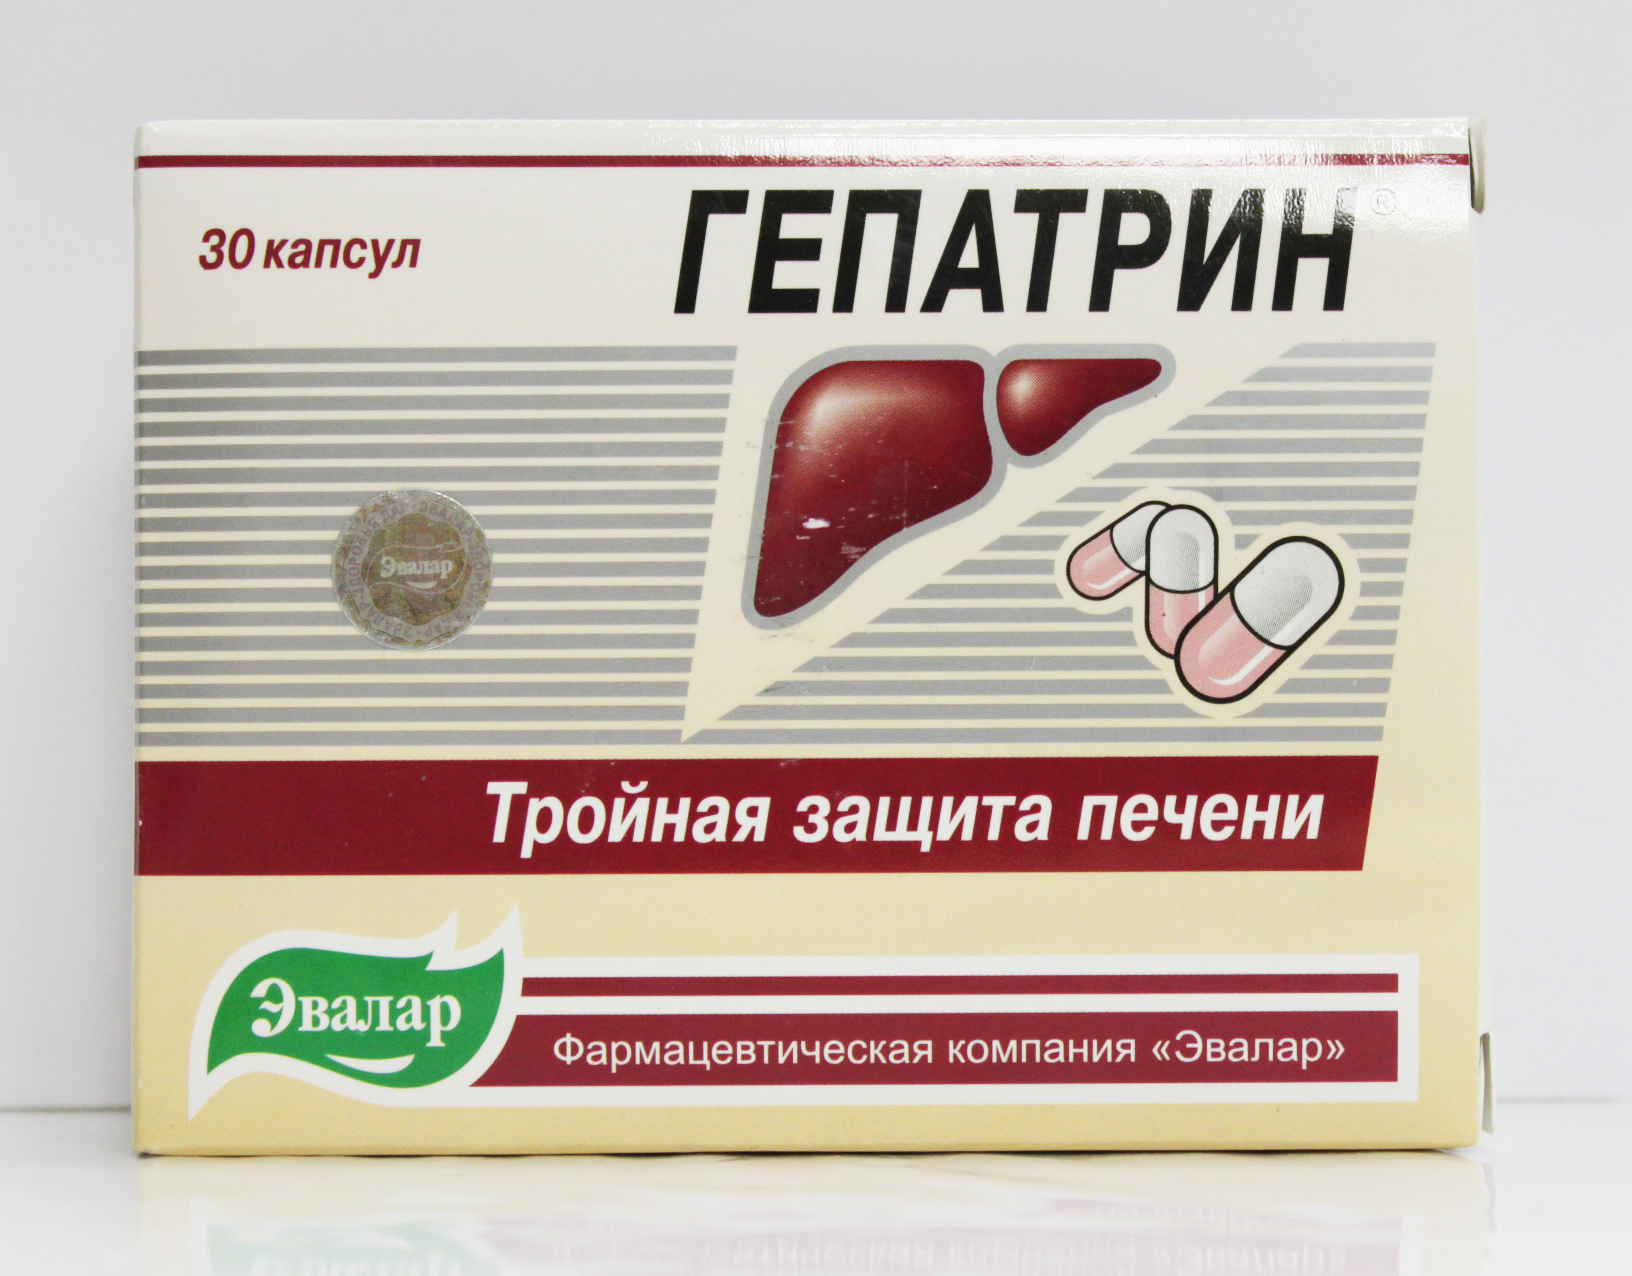 Лекарство лечение печени препараты. Гепатрин Эвалар 30 капсул. Гепатрин 4602242002185. Гепатрин 400 мг. Таблетки от печени Гепатрин.